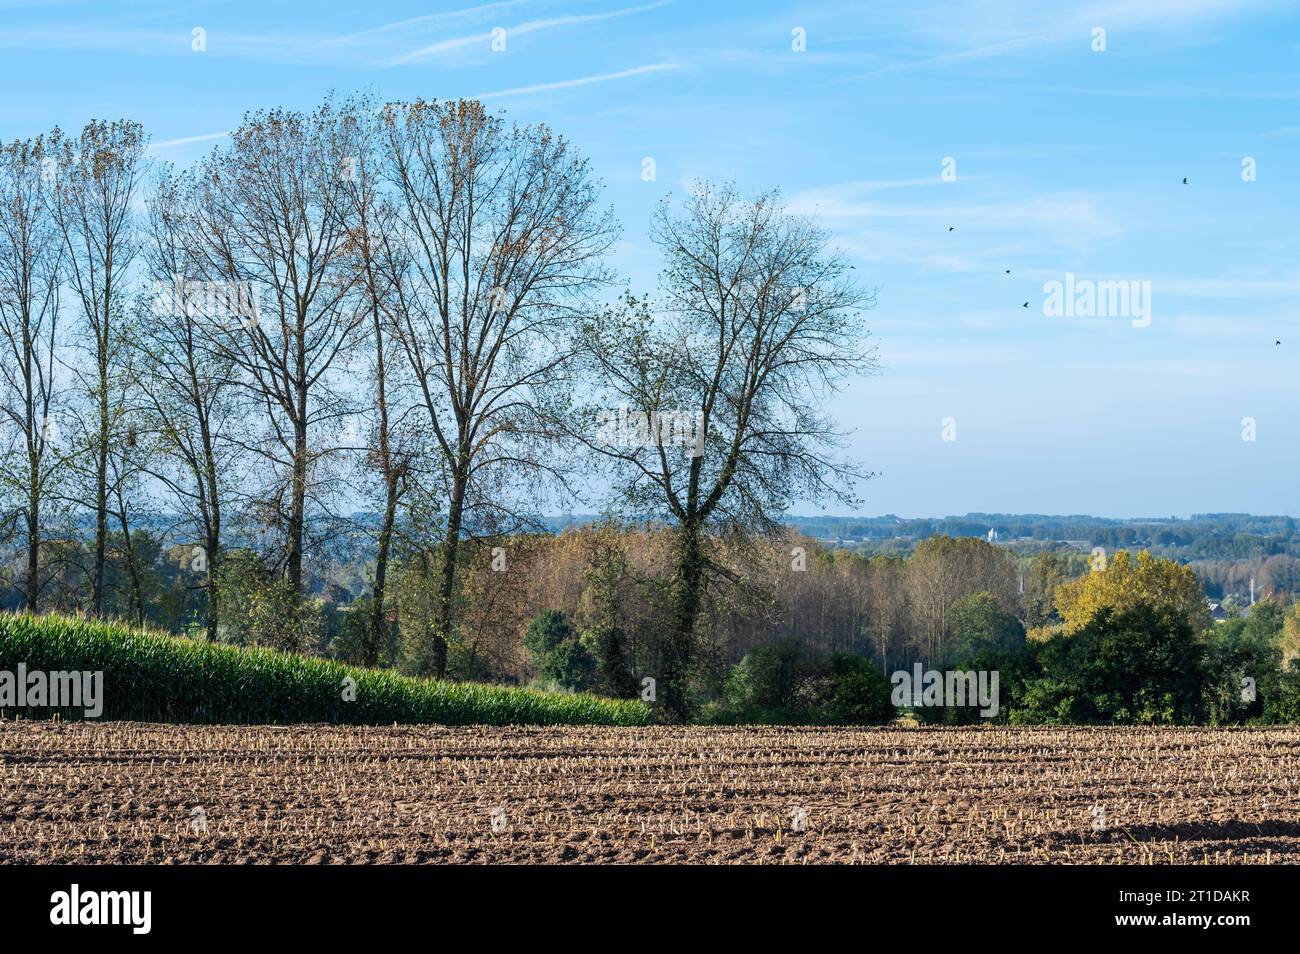 Maisfelder und Bäume in der flämischen Landschaft um Waarbeke, Ostflämische Region, Belgien Credit: Imago/Alamy Live News Stockfoto